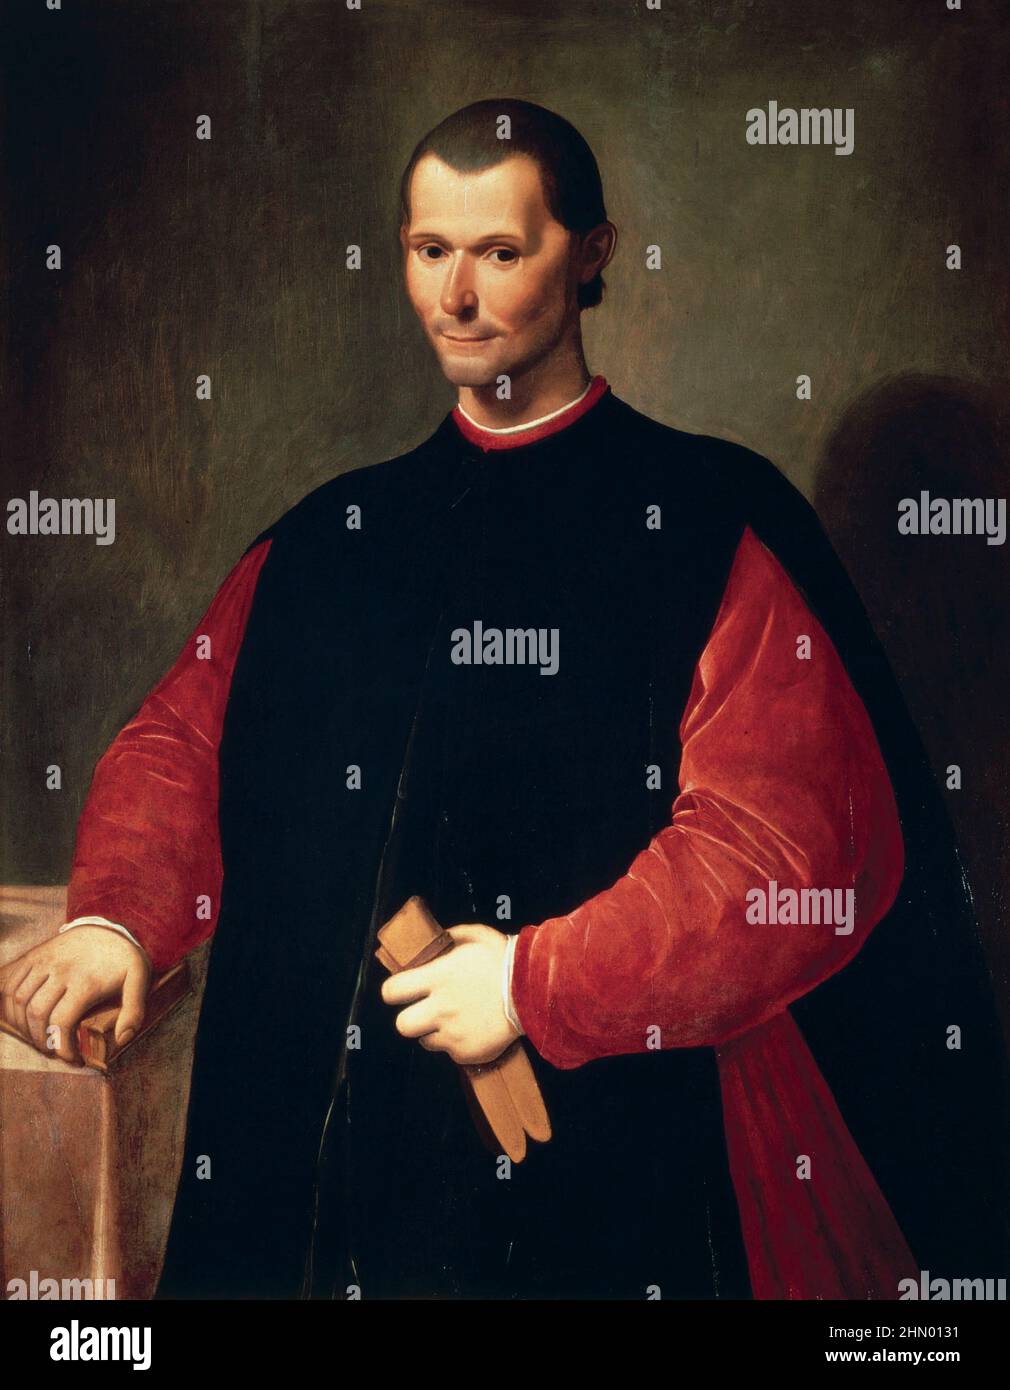 Ritratto di Niccolò Machiavelli (1469–1527) artista Santi di Tito (1536–1603) diplomatico italiano, autore, filosofo, storico. Famoso per il suo trattato politico 'il Principe' (il Principe) pubblicato nel 1532. Ubicazione Palazzo Vecchio Foto Stock